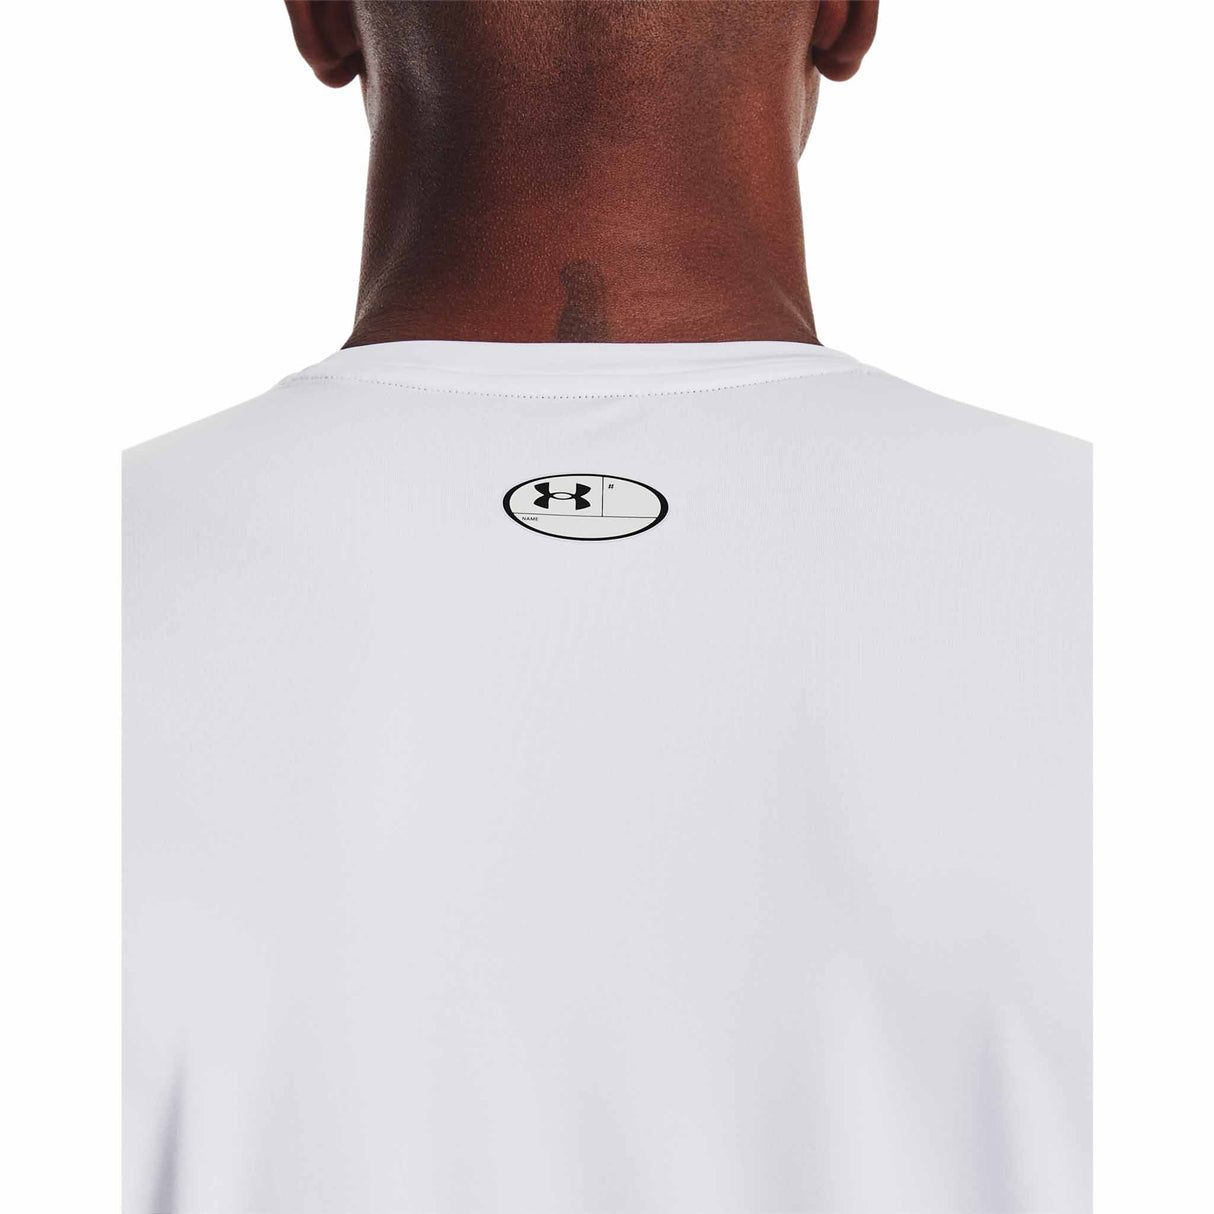 Under Armour HeatGear Armour Fitted T-shirt à manches courtes pour hommes - Blanc